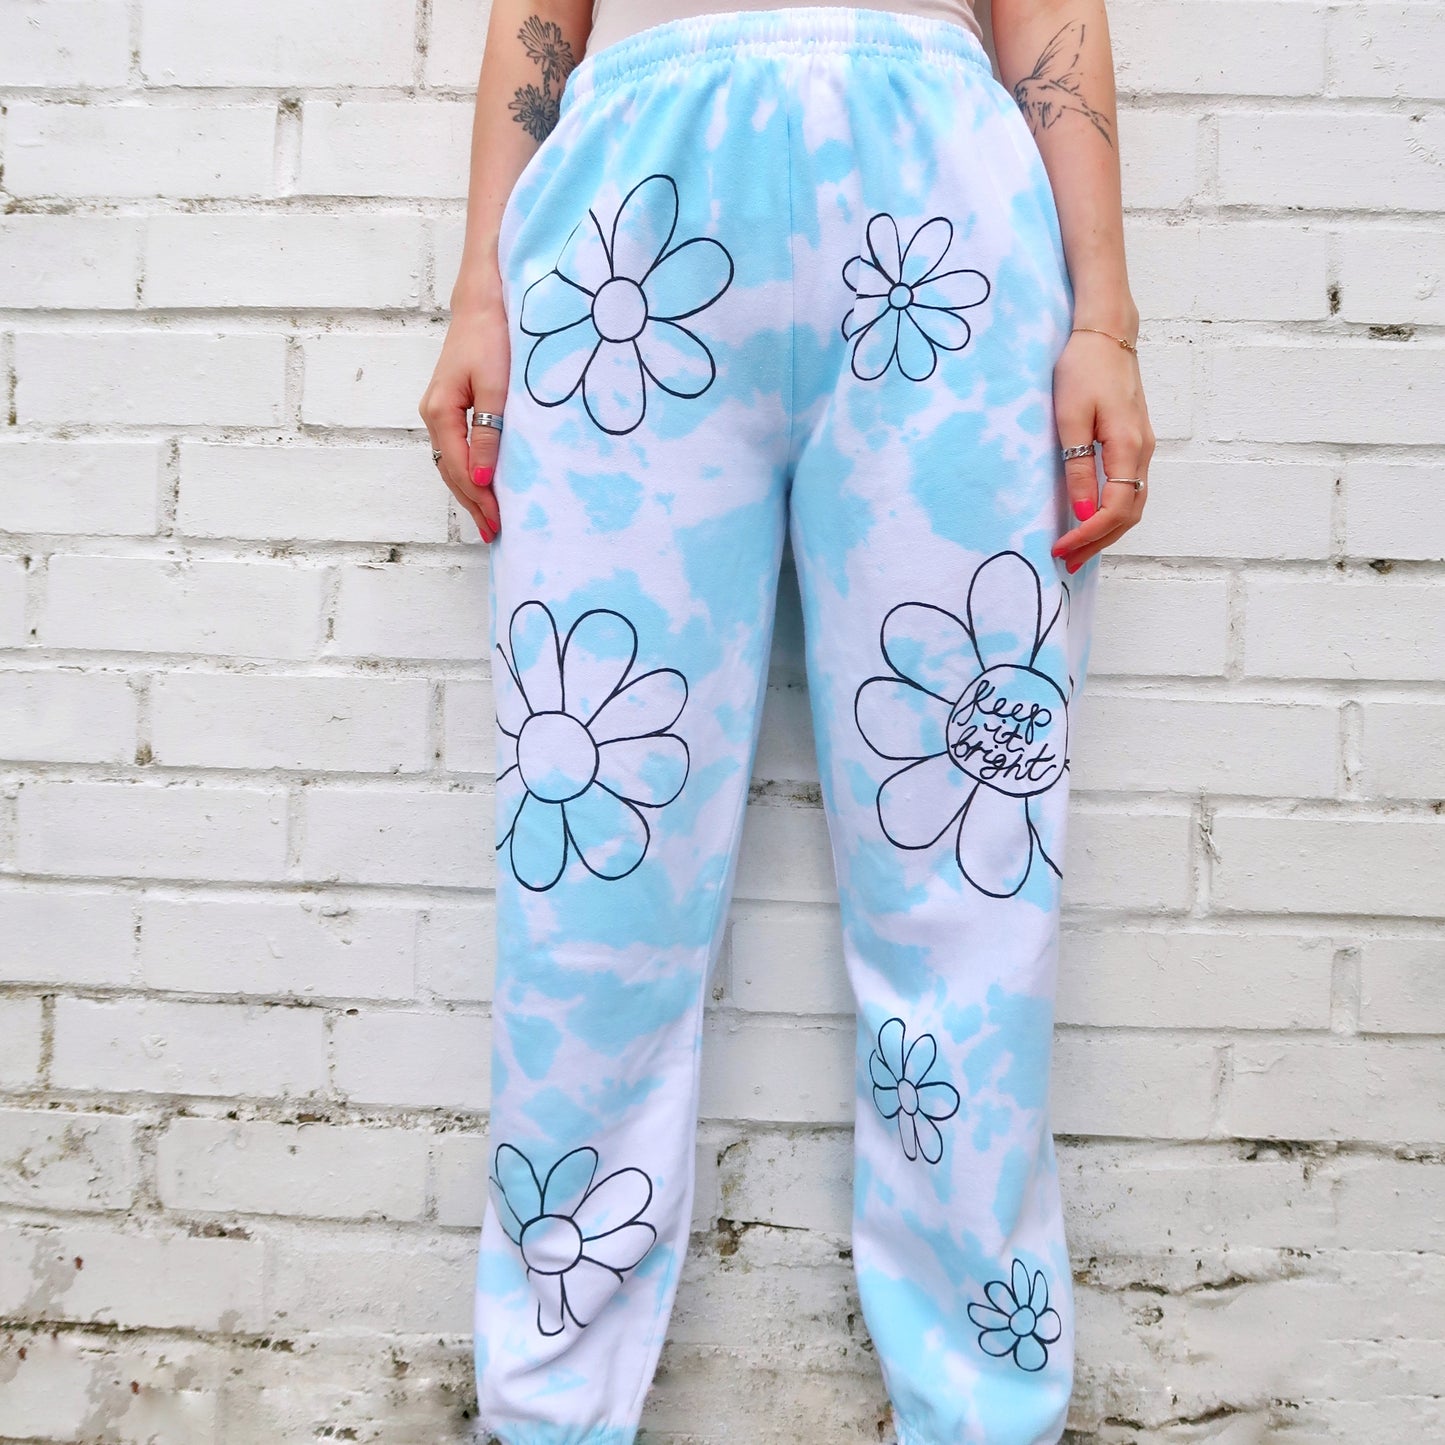 hippie heart tie dye lounge pants / joggers - blue